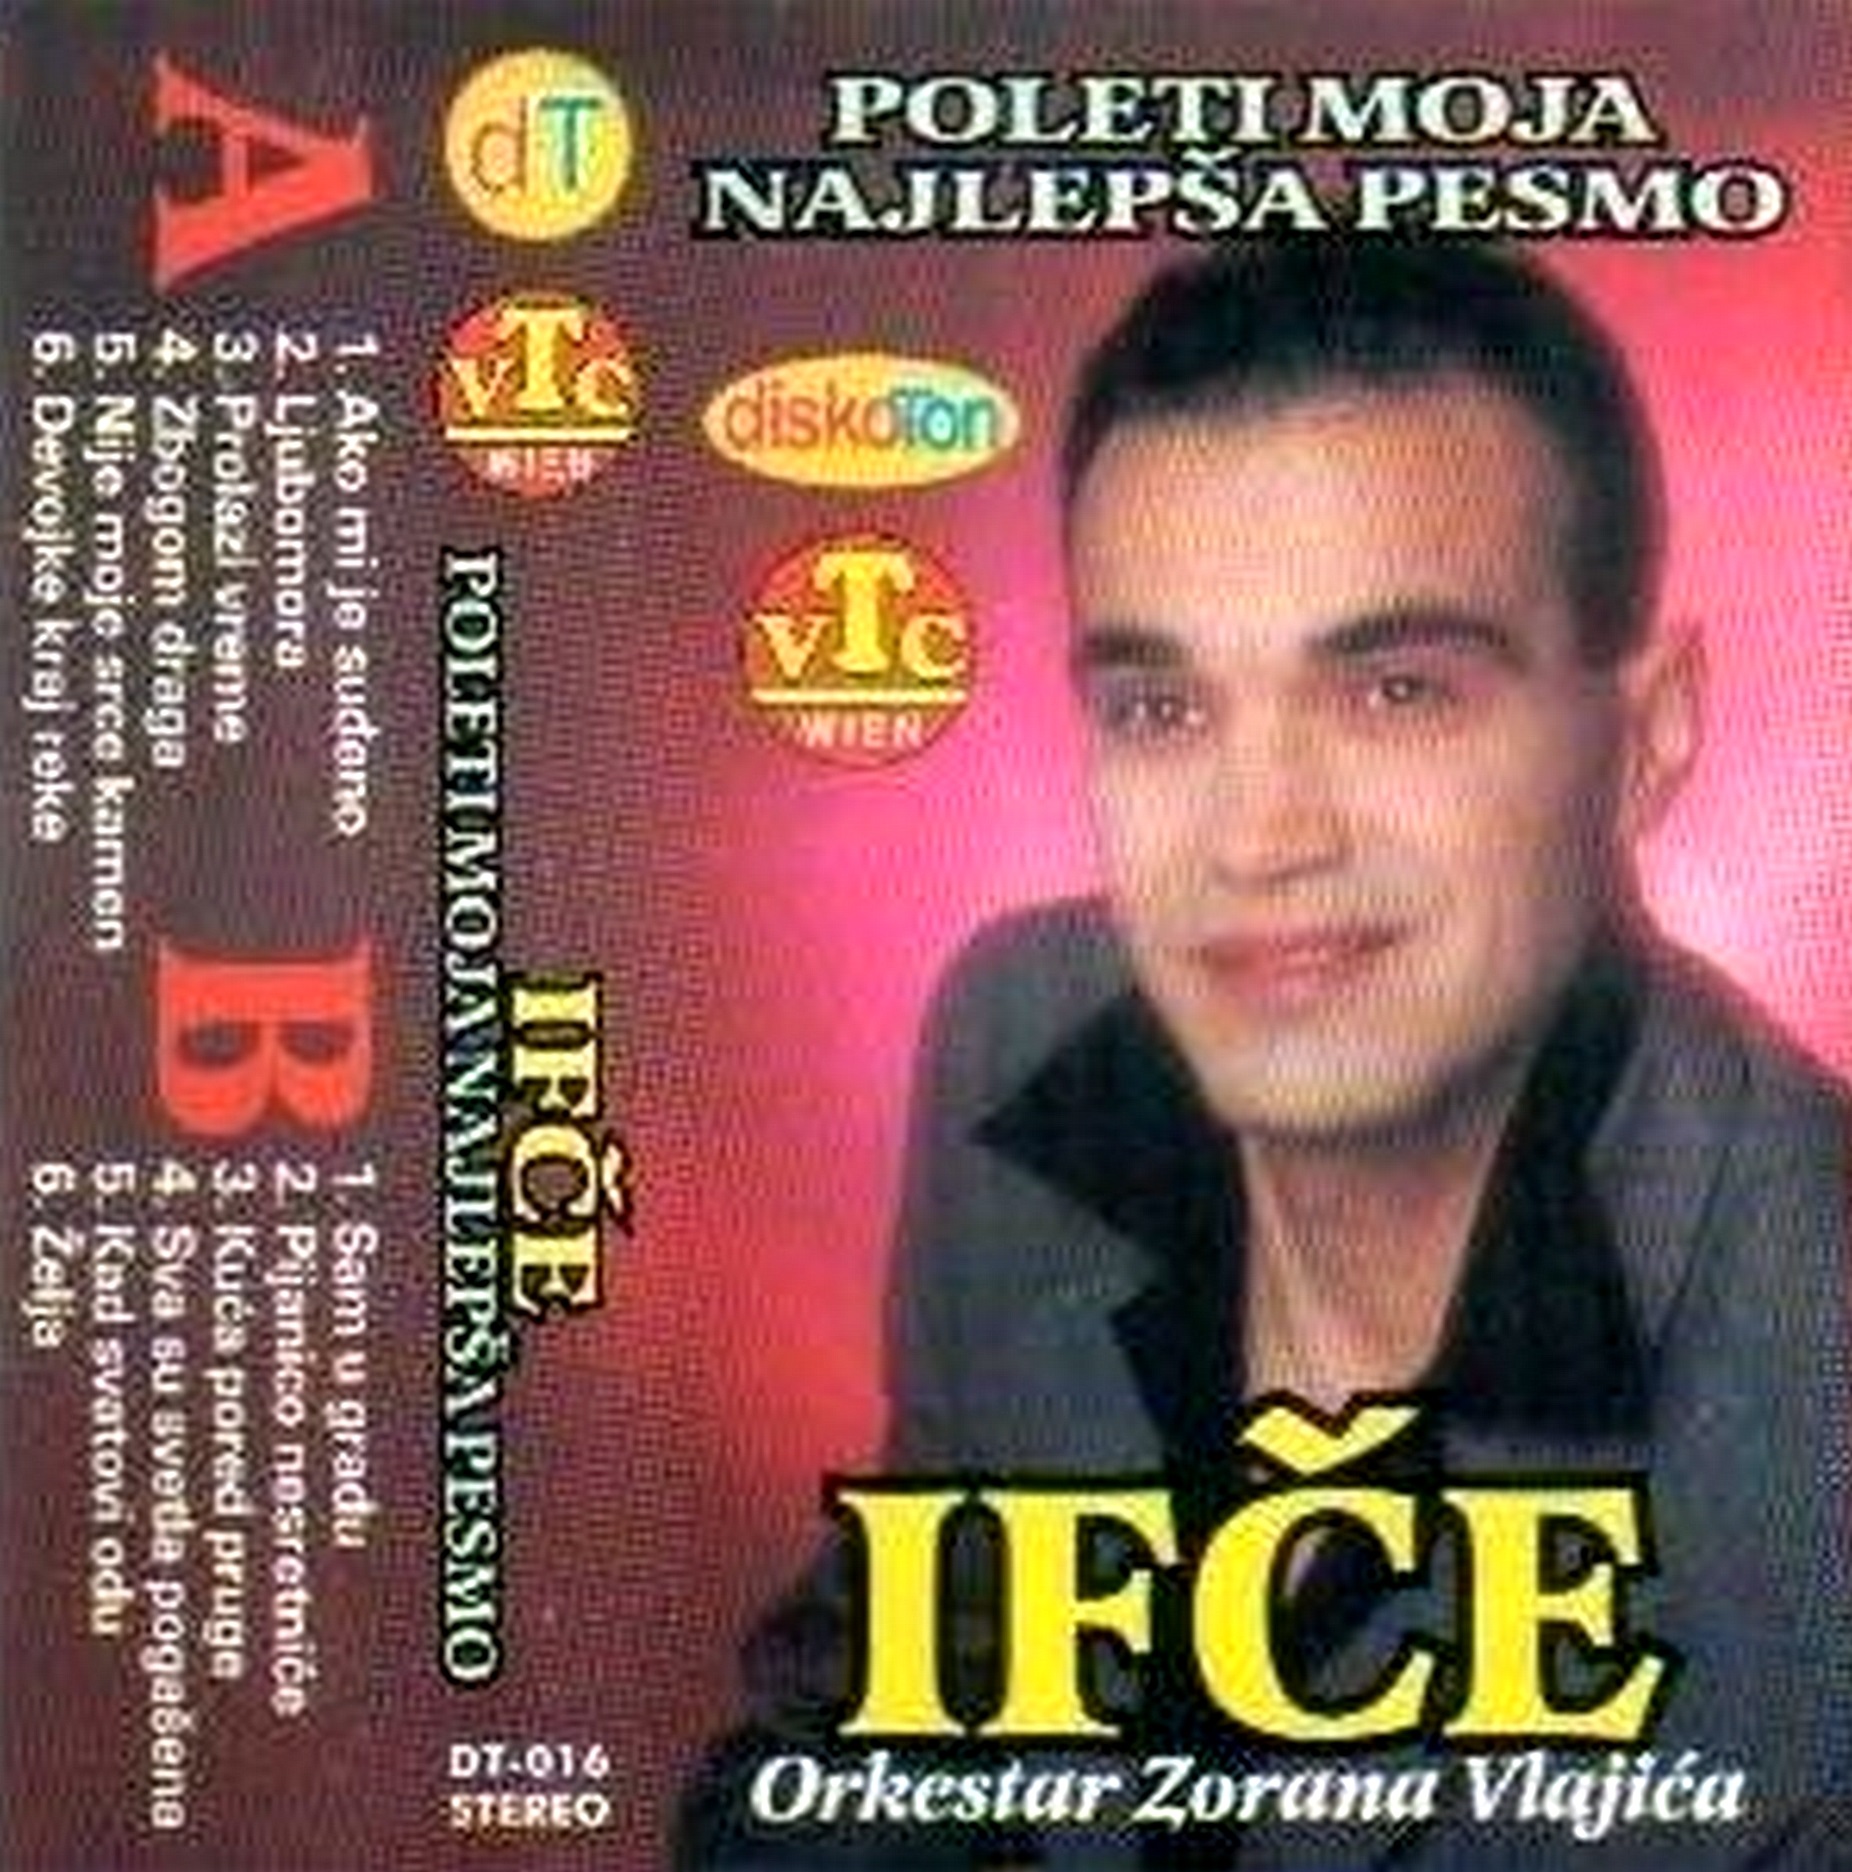 Ifce 1995 Poleti moja najlepsa pesmo kp